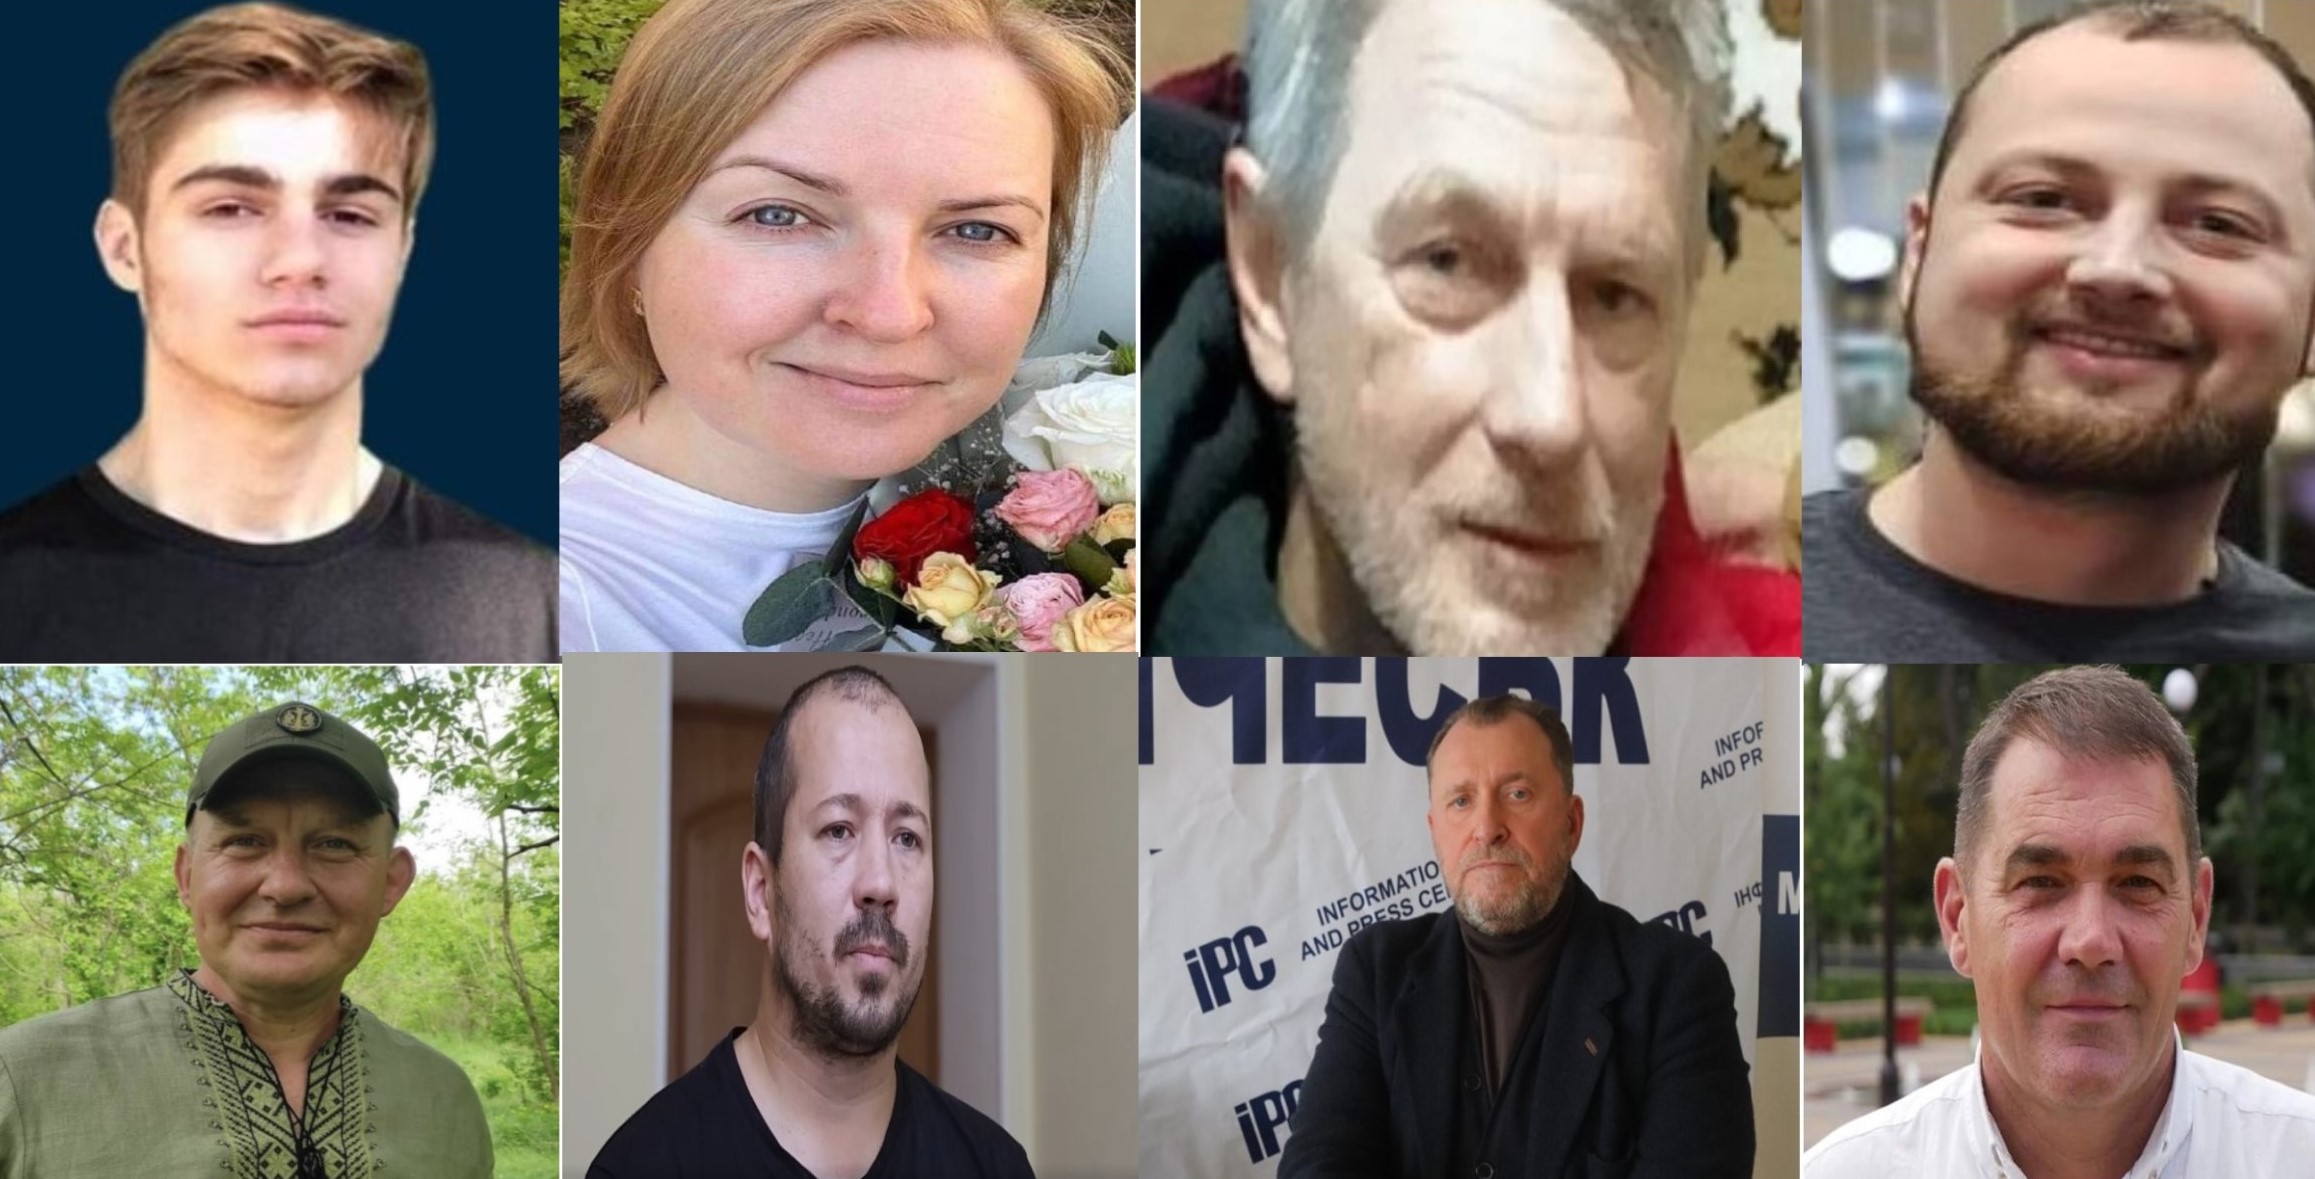 From left, clockwise Appaz Kurtamet, Iryna Horobtsova, Serhiy Tsyhipa, Yaroslav Zhuk, Oleksandr Babych, Oleksiy Kiselyov, Dmytro Zakharov and Oleksandr Zarivny